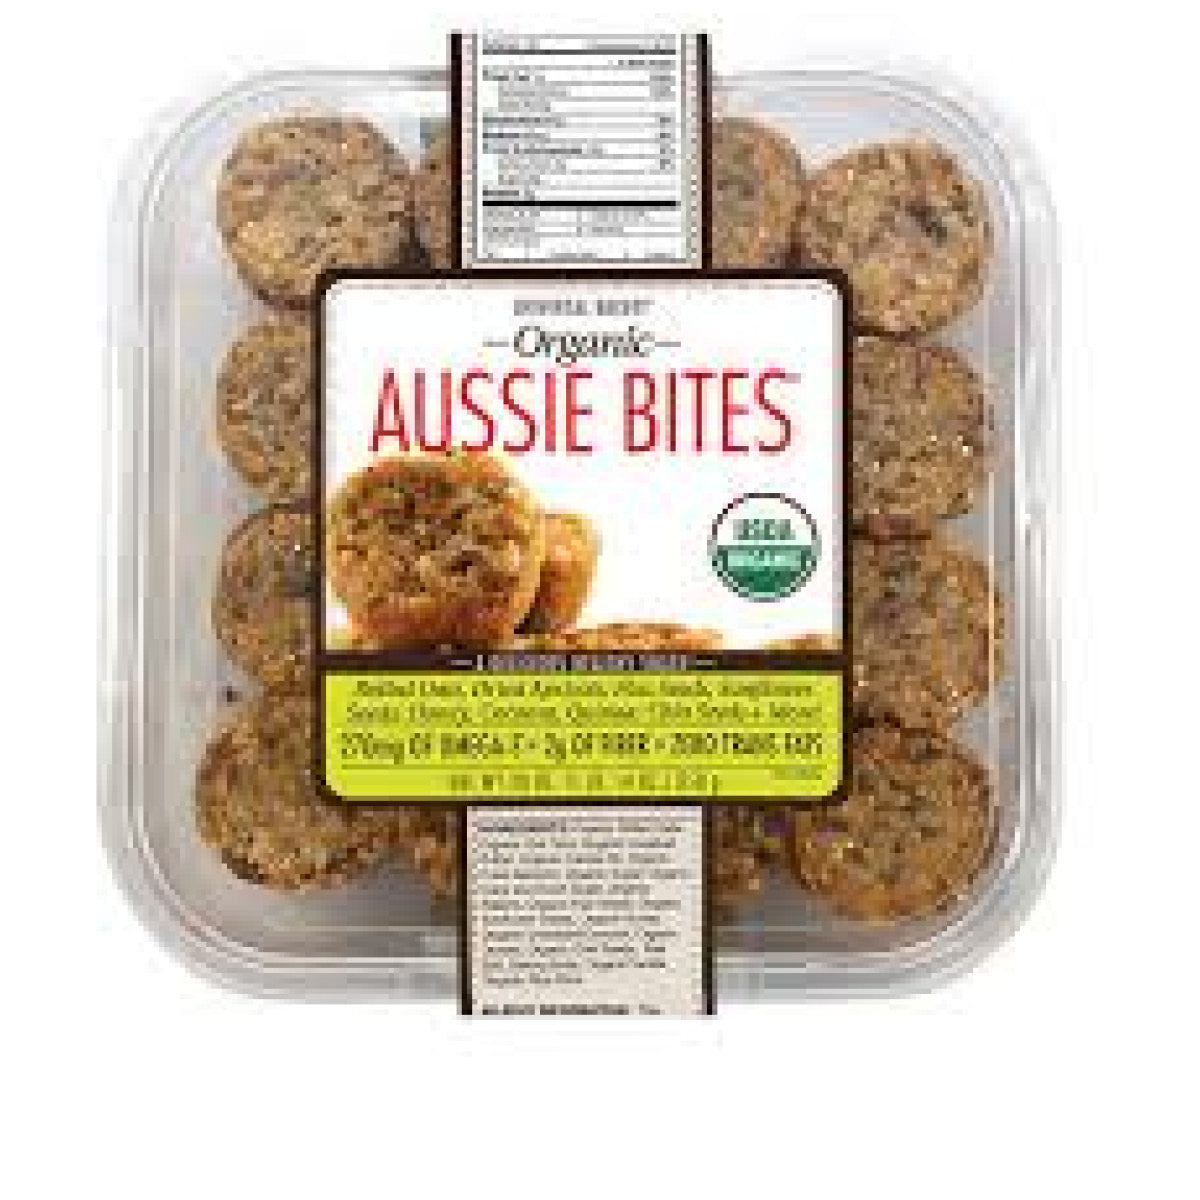 Best Express Organic Aussie Bites, 850g